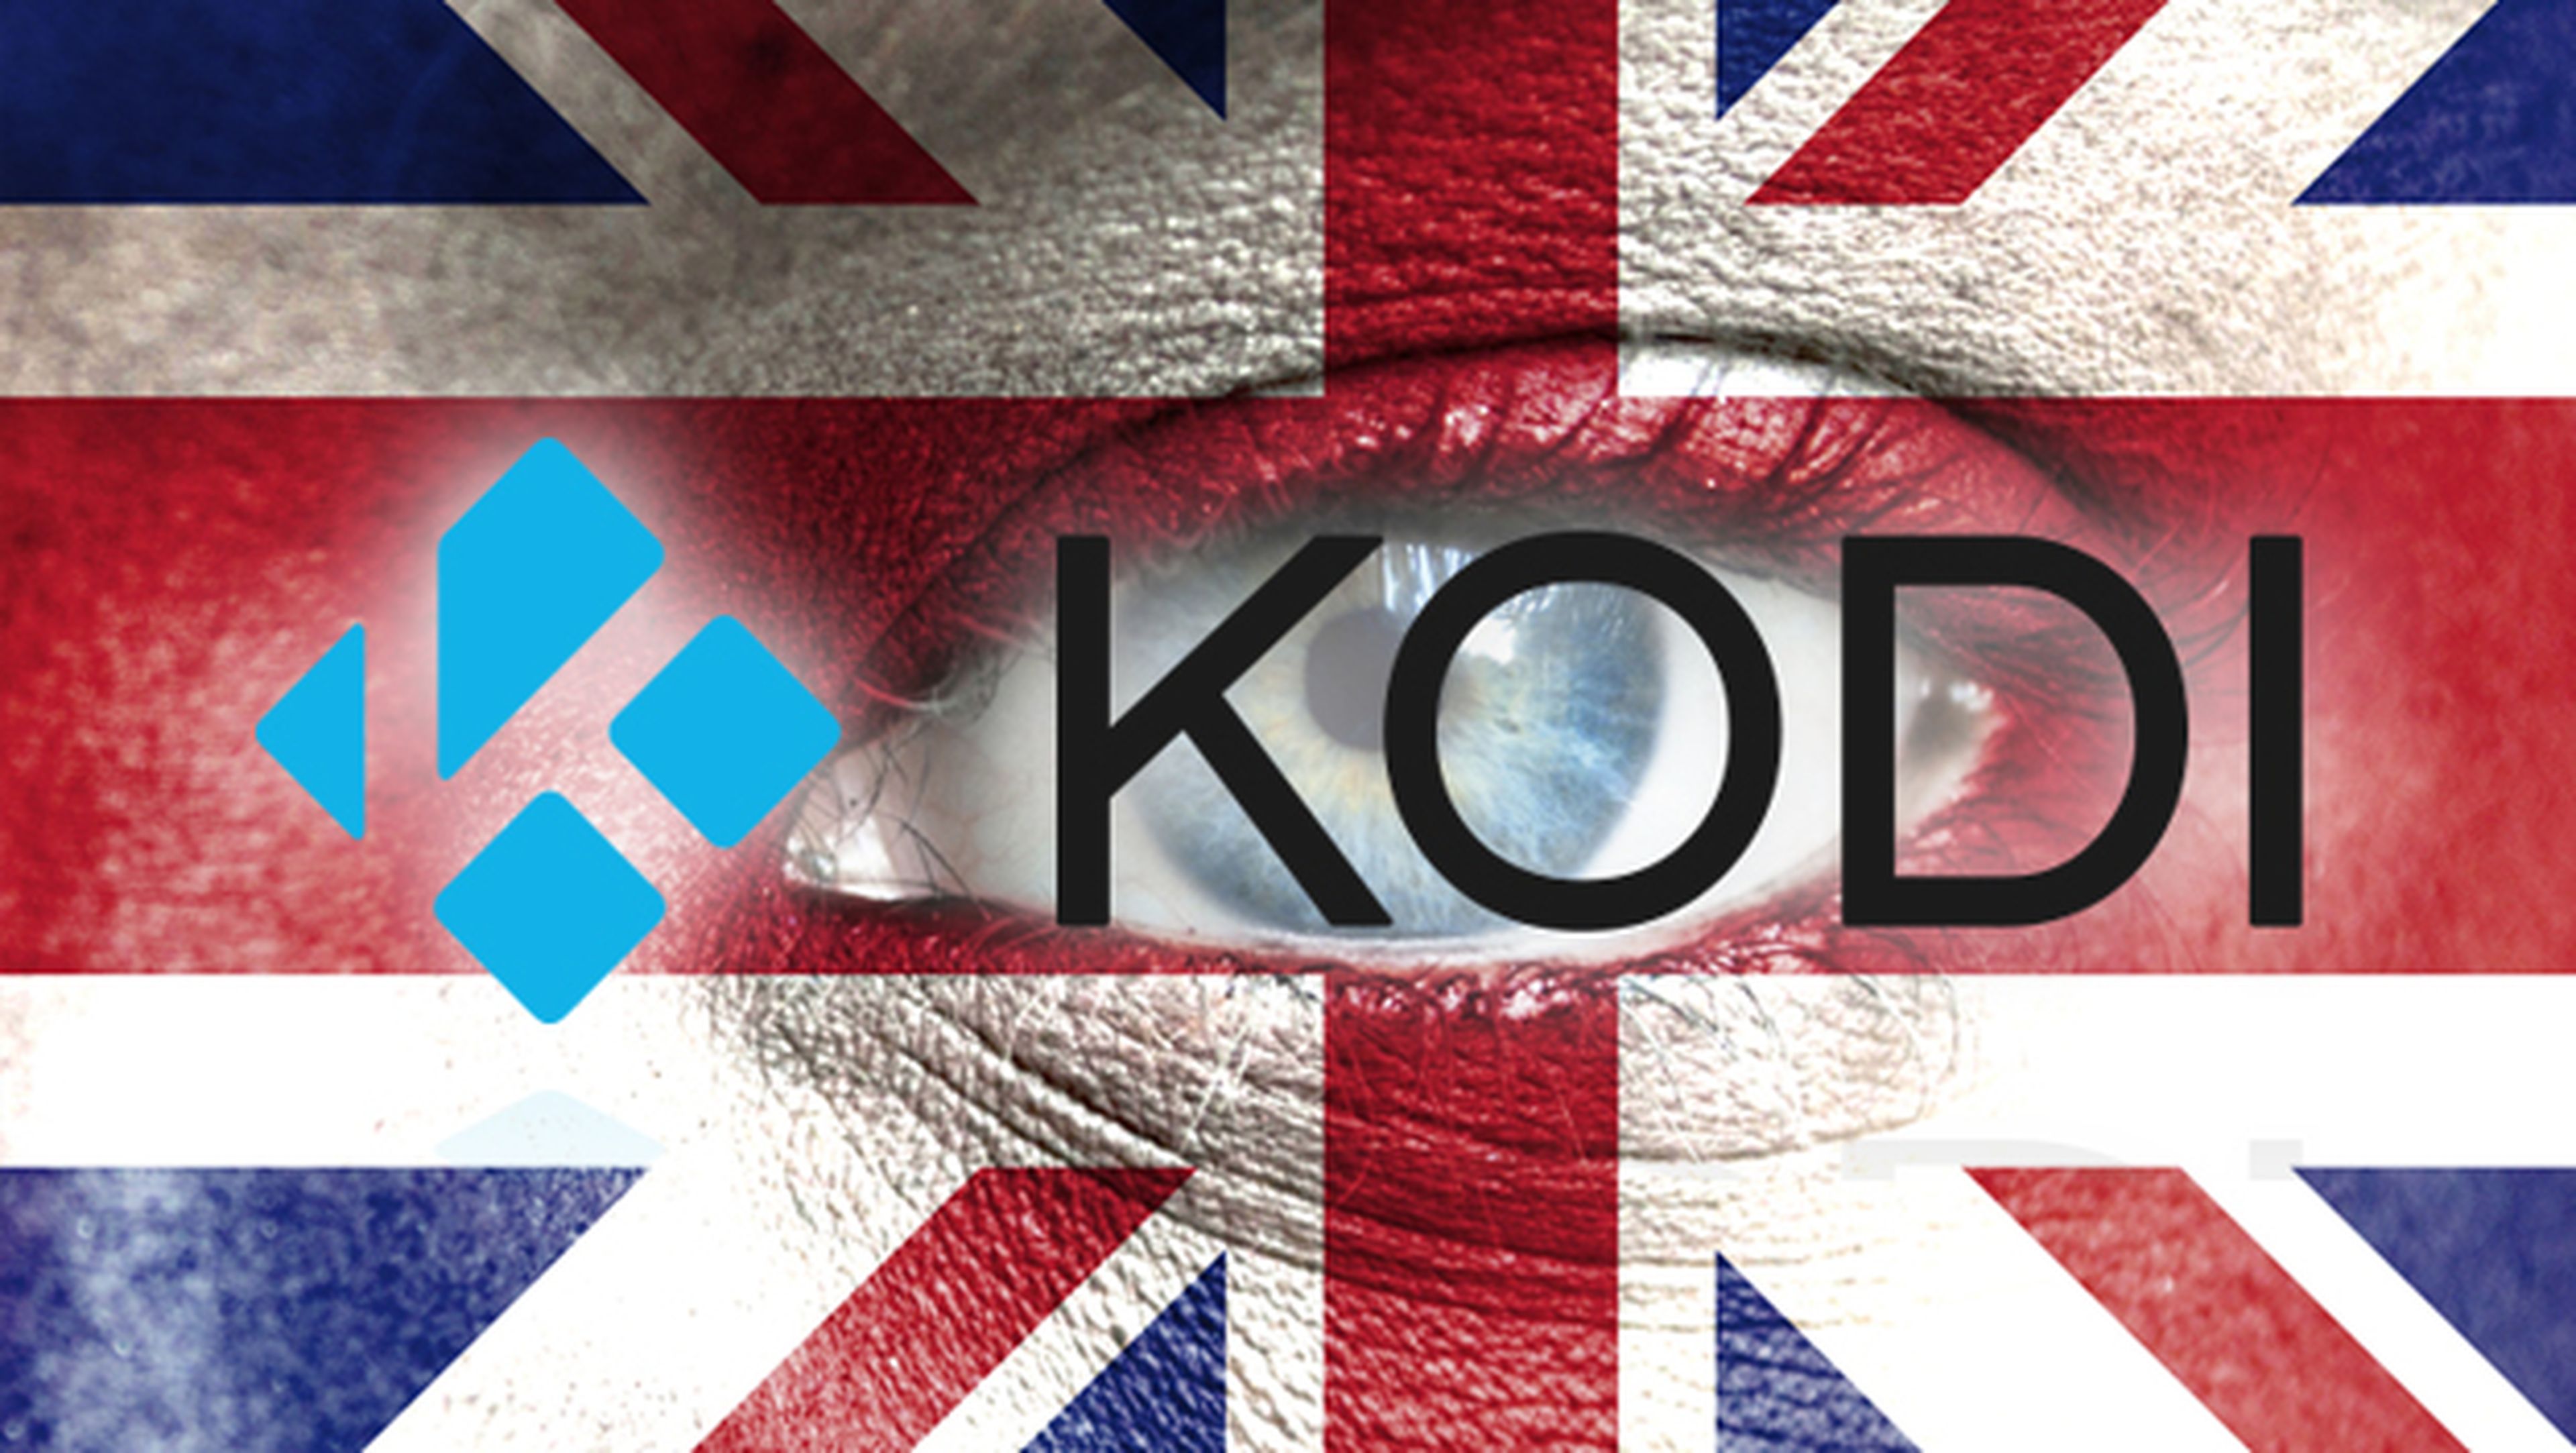 Kodi, especialmente el fútbol gratis que emiten algunos usuarios, tiene los días contados en Reino Unido